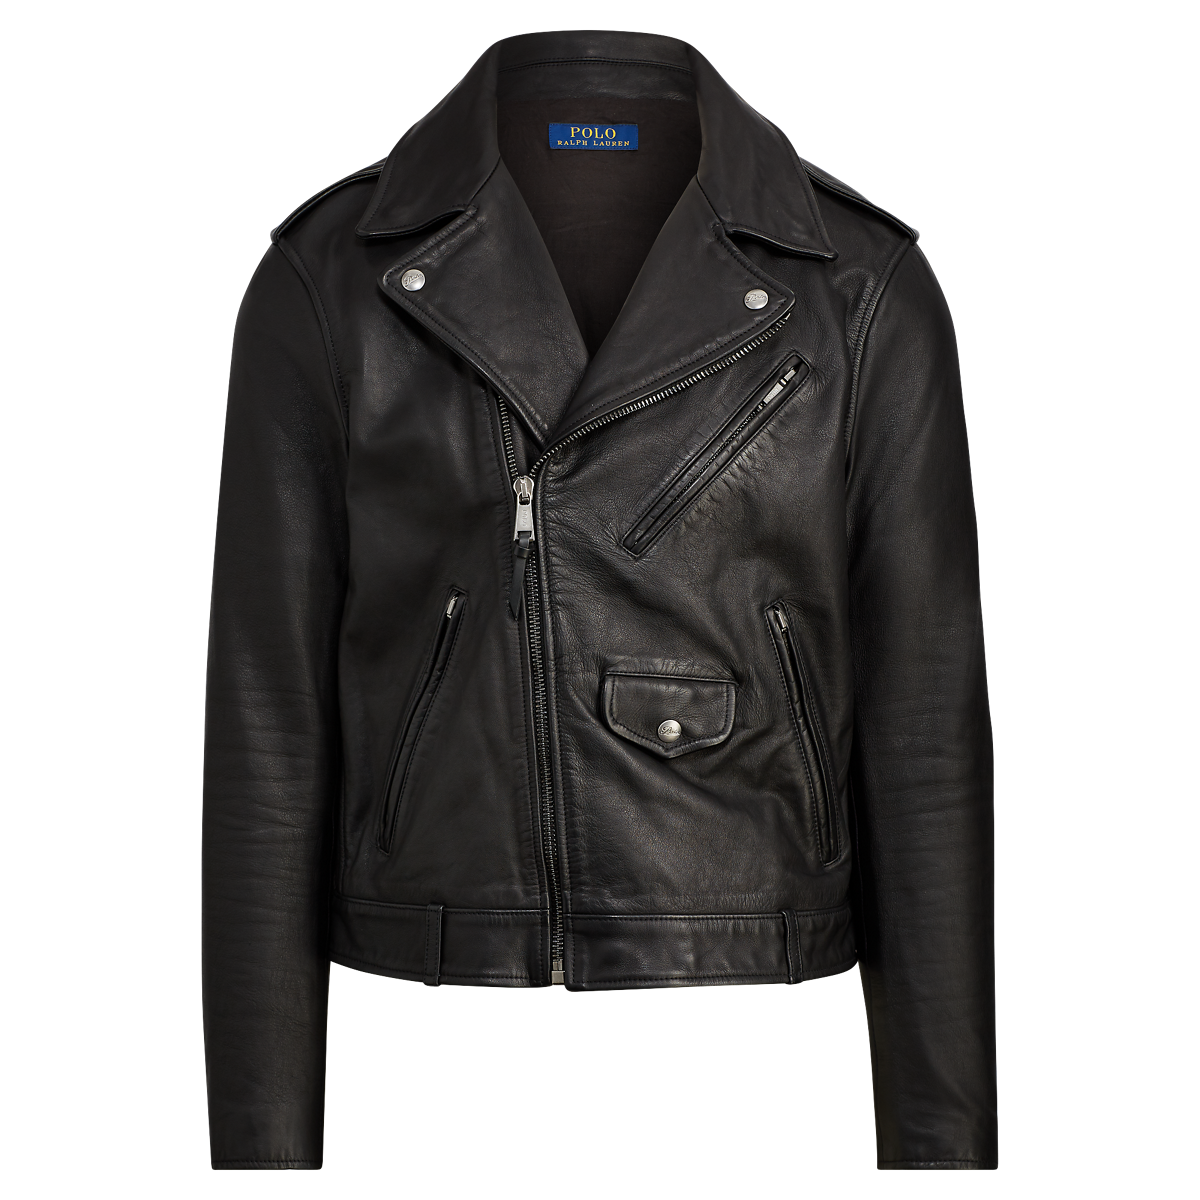 Aprender acerca 31+ imagen polo ralph lauren leather motorcycle jacket